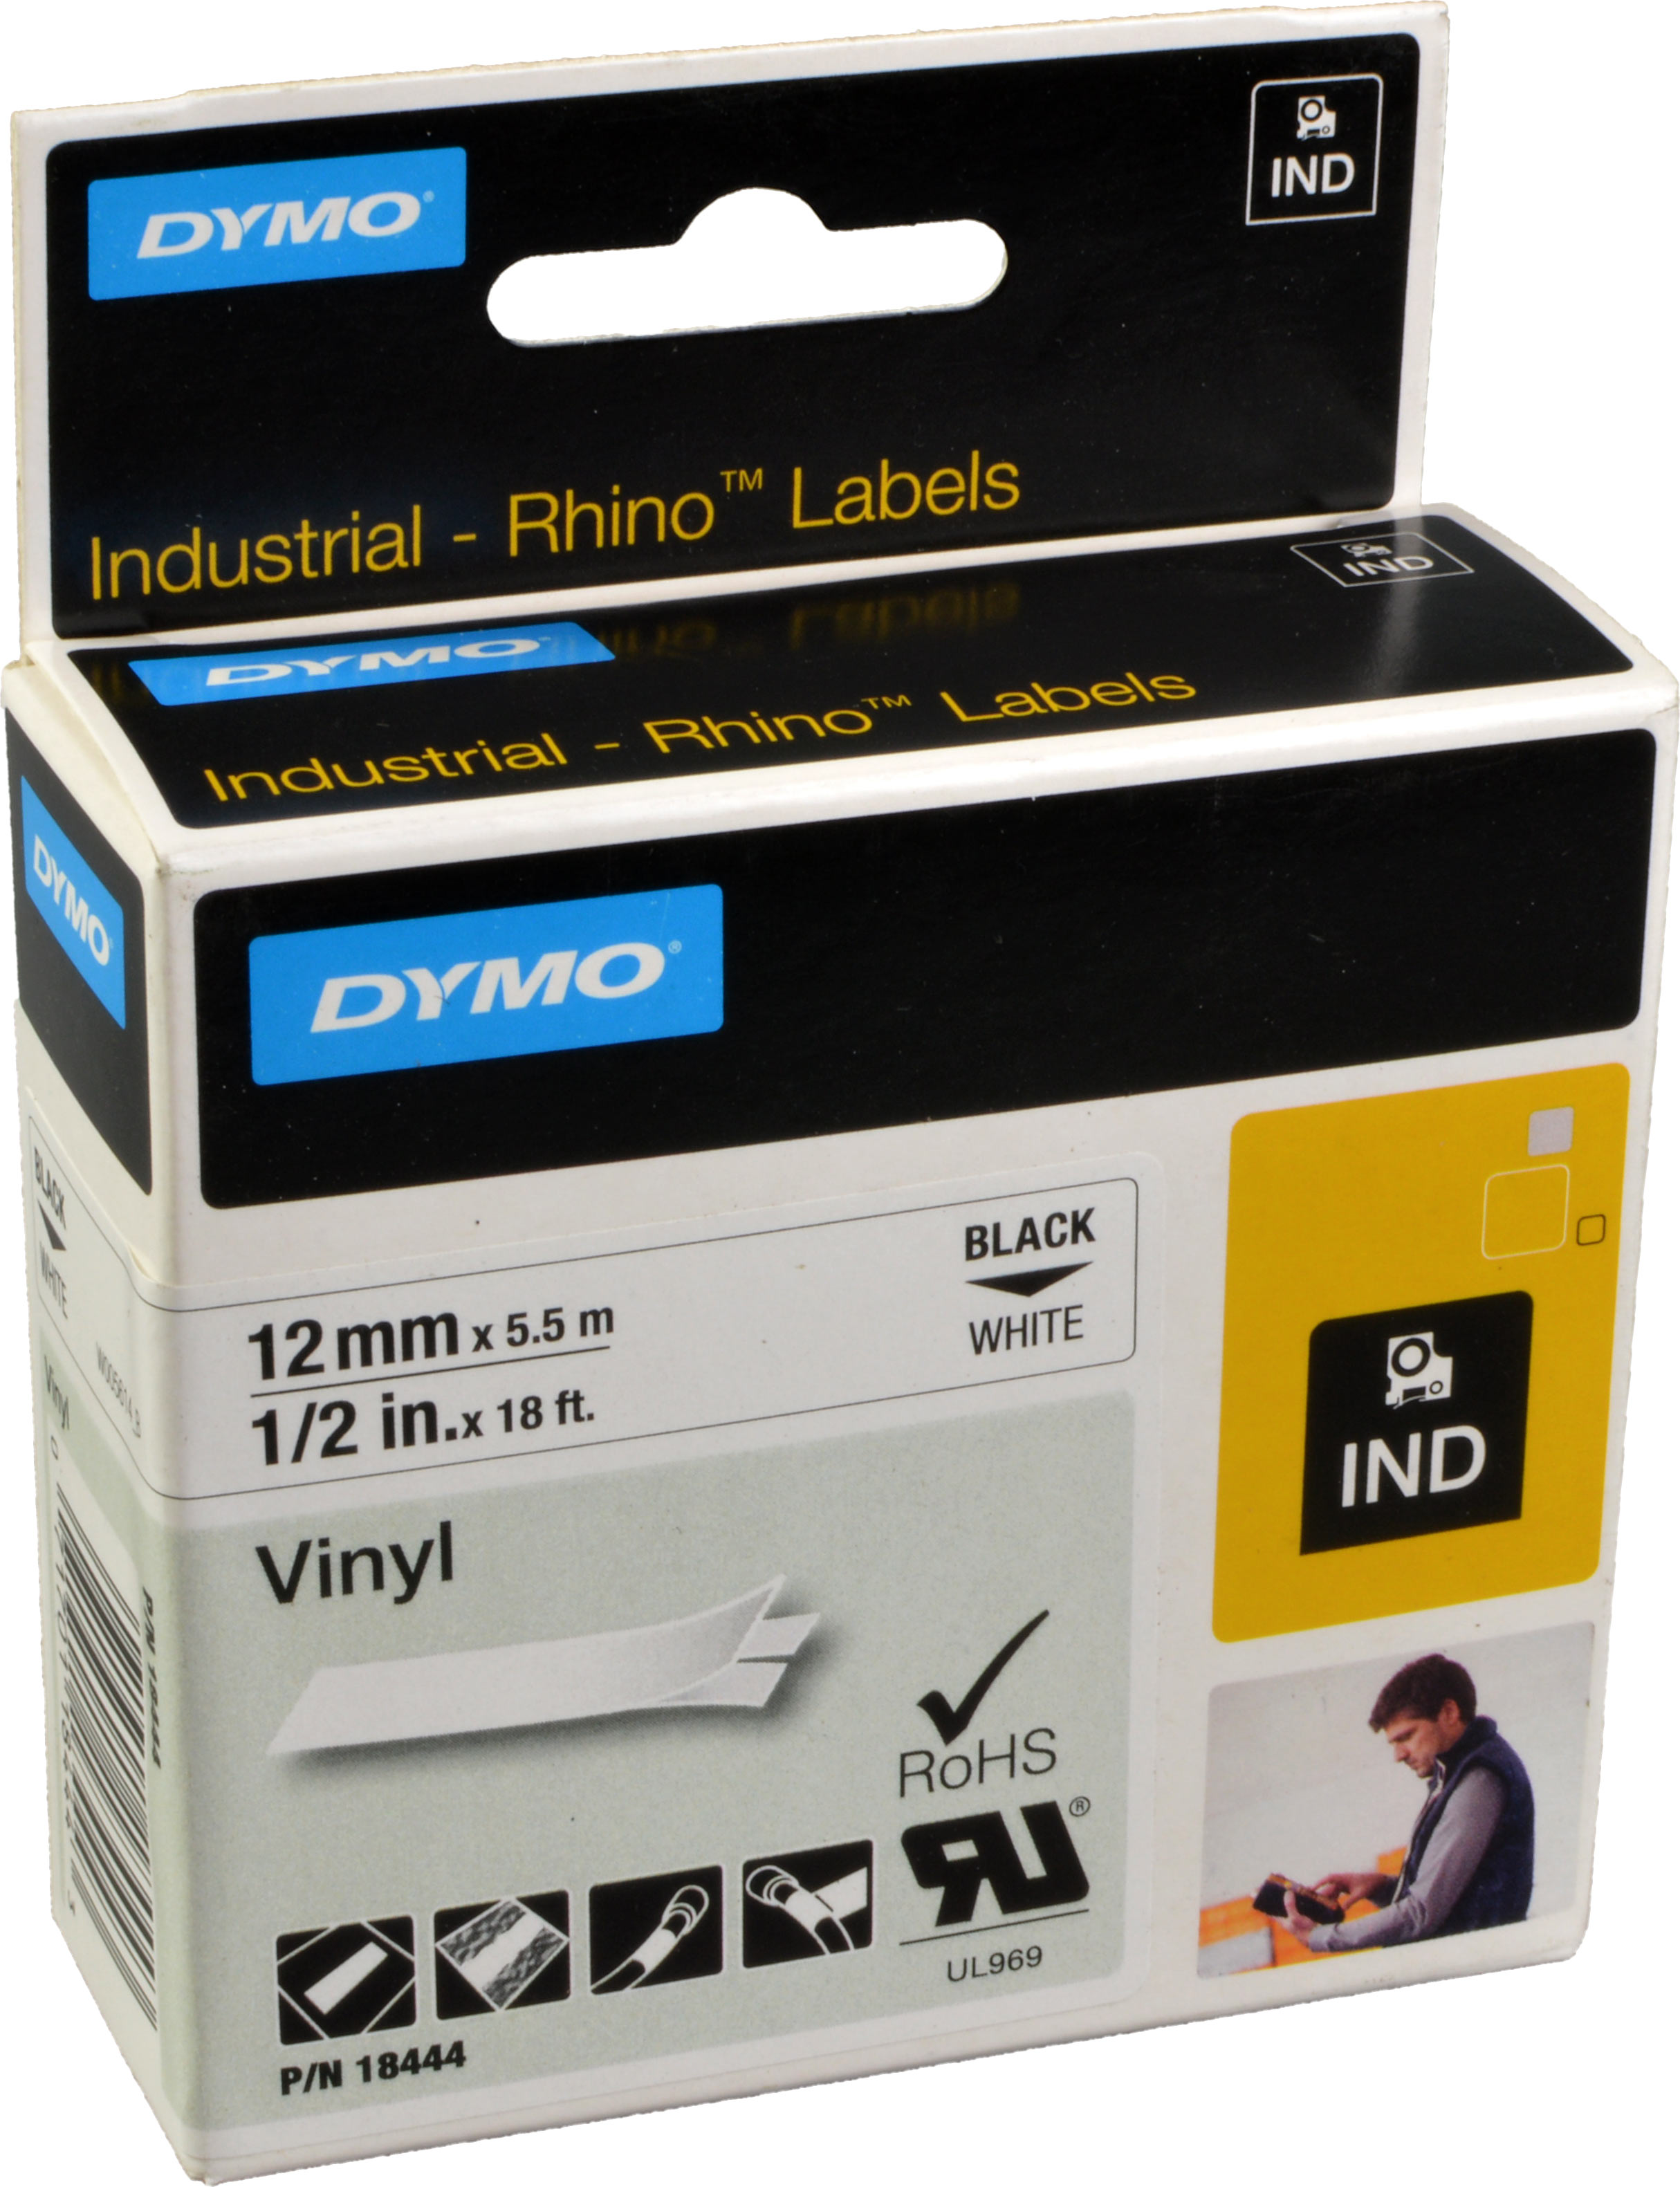 Dymo Originalband 18444  schwarz auf weiß  12mm x 5,5m  Vinyl